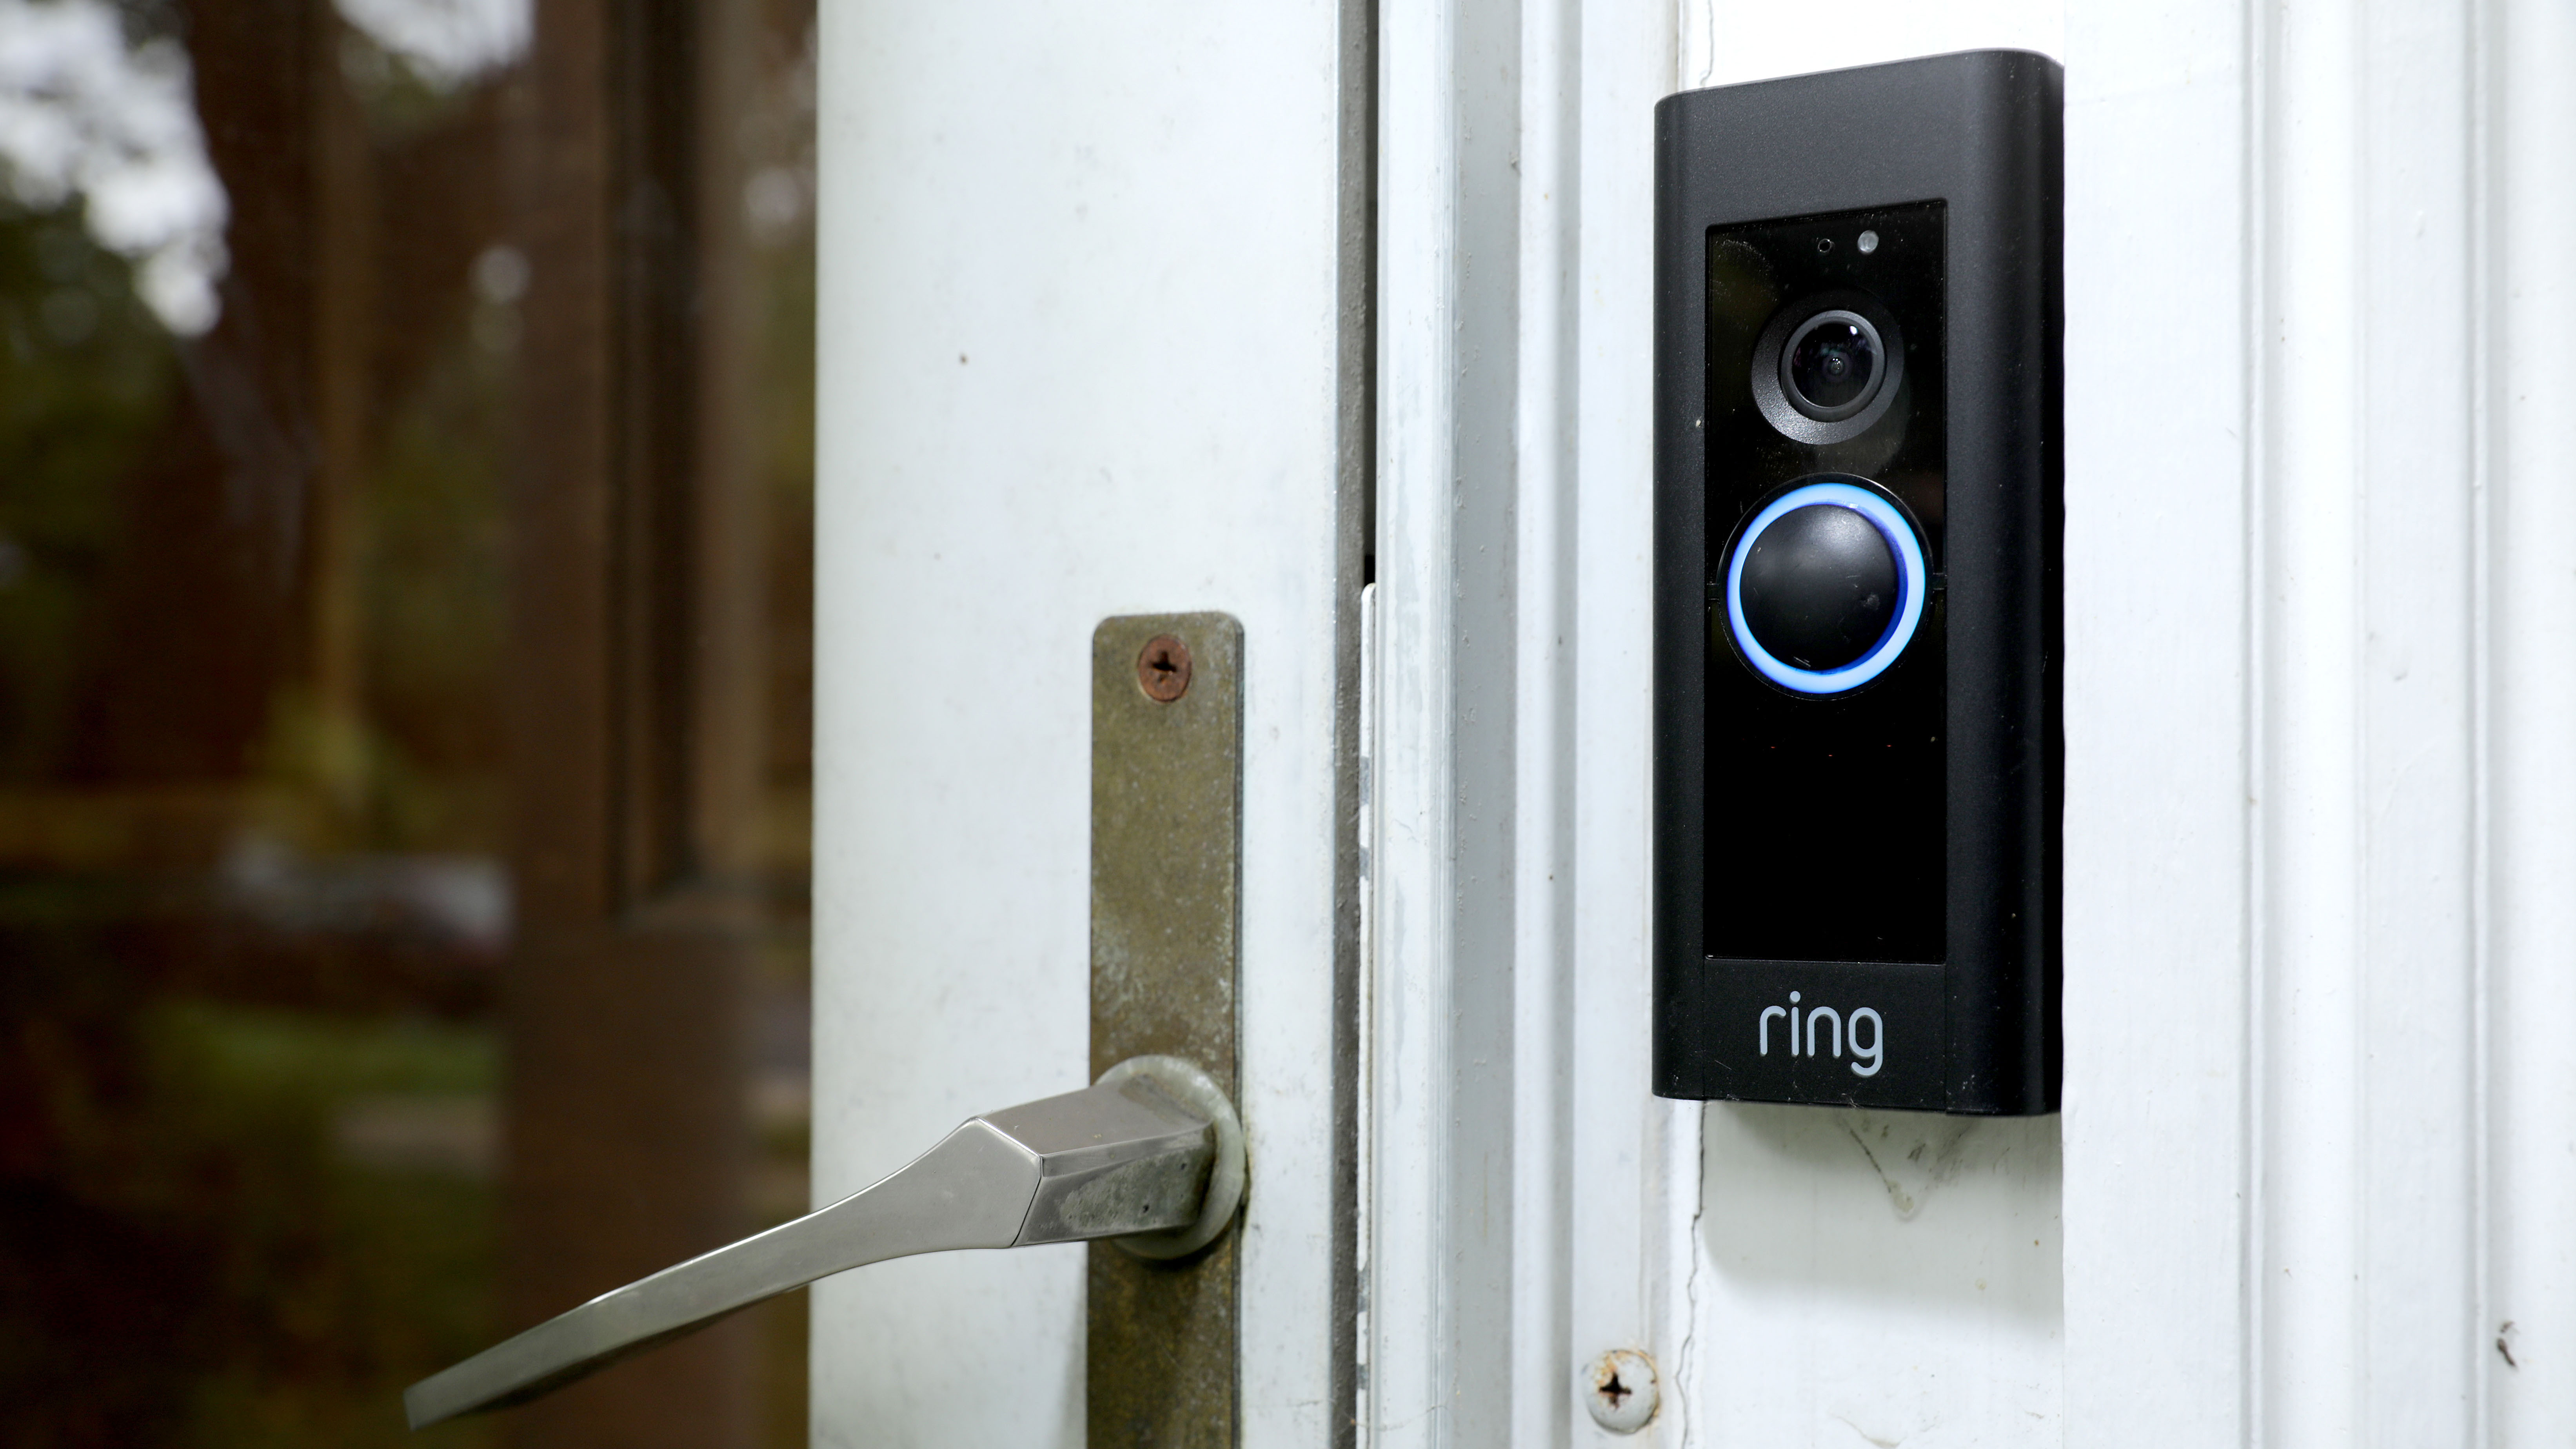 ring doorbell camera system